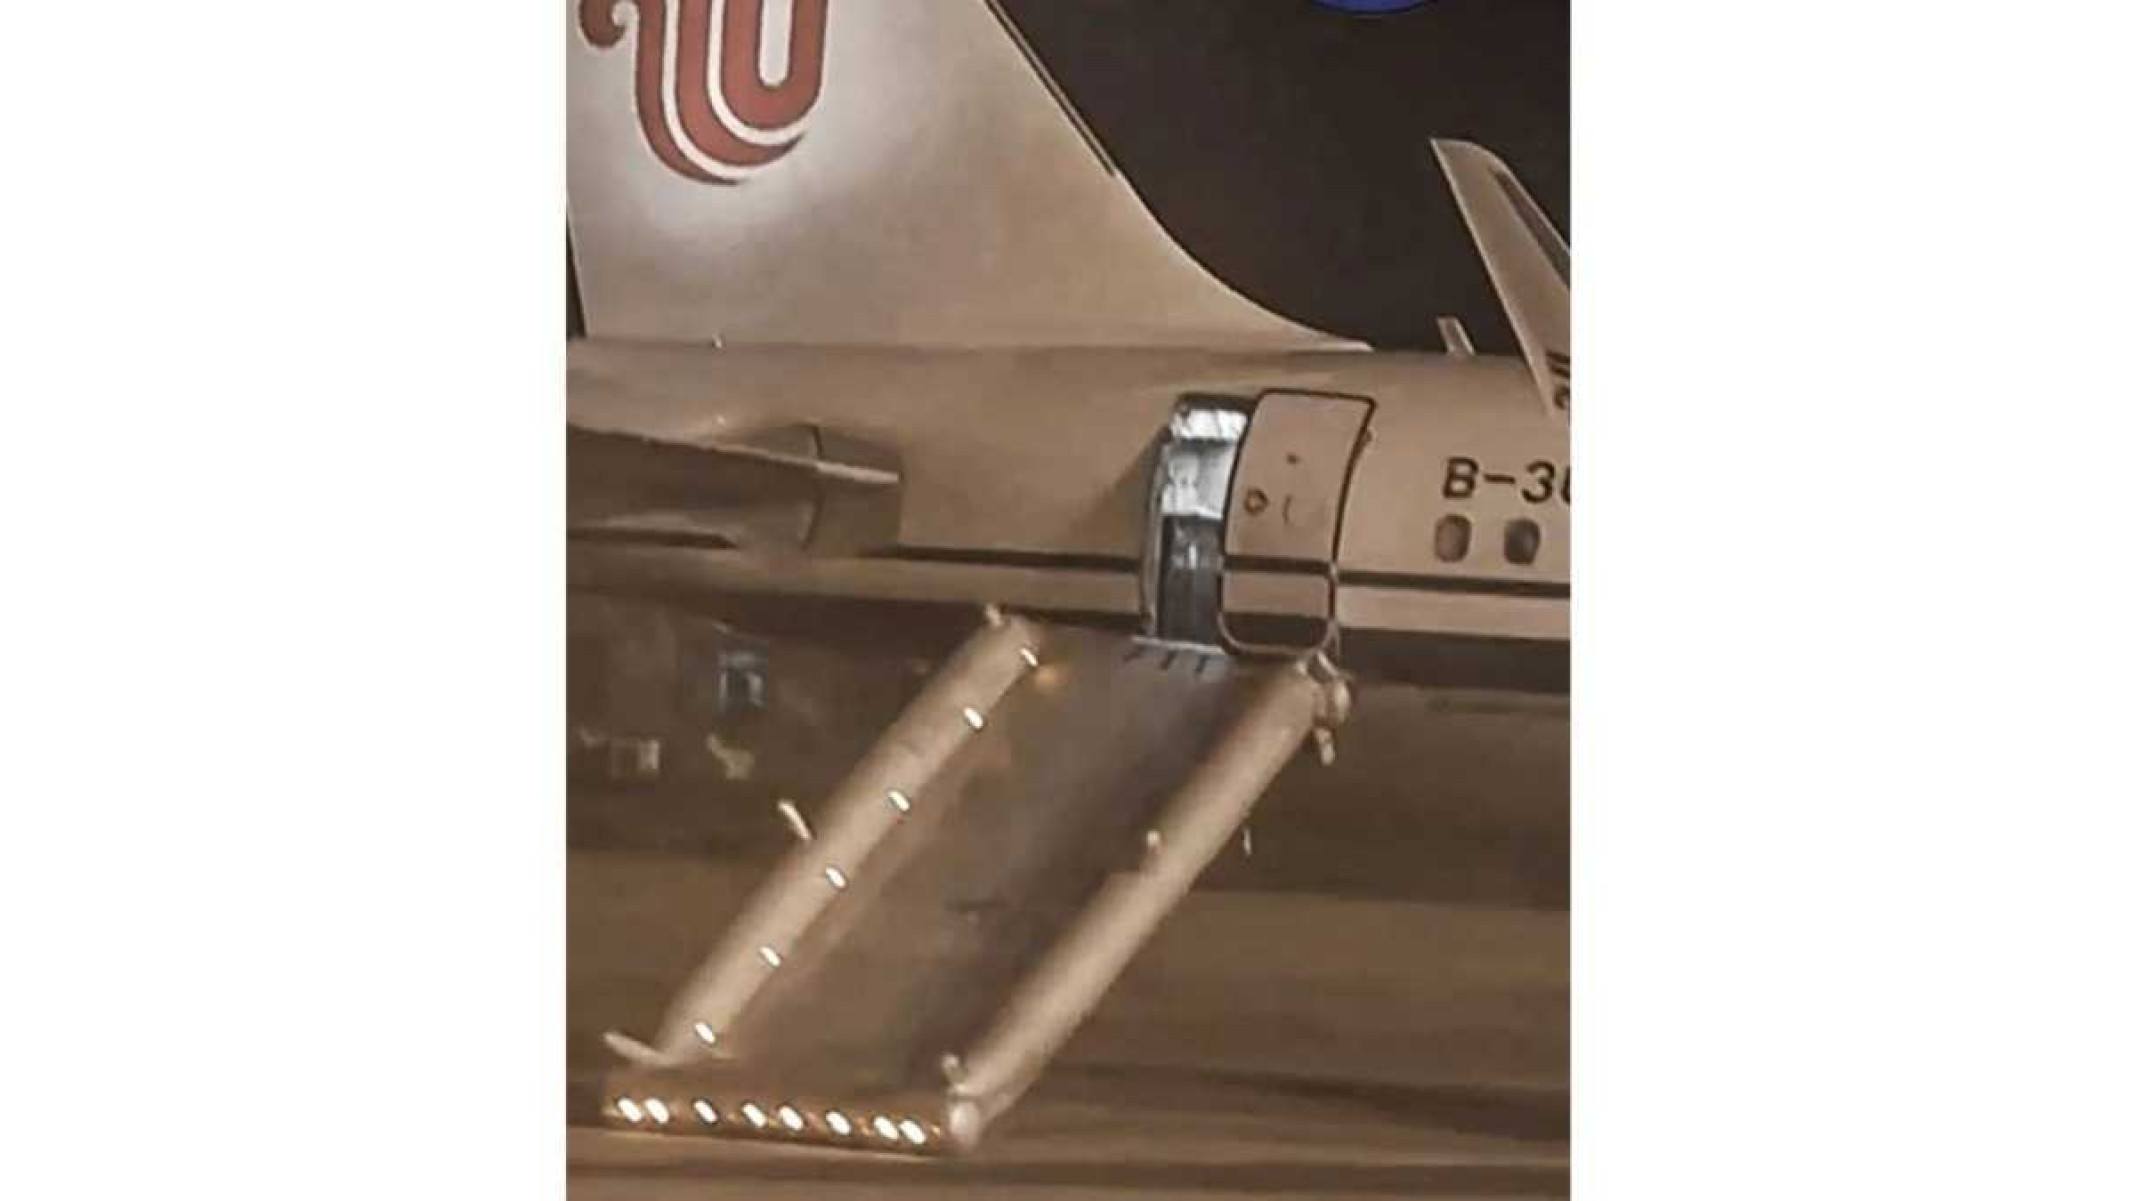 Passageira que procurava banheiro se confunde e abre porta de emergência do avião